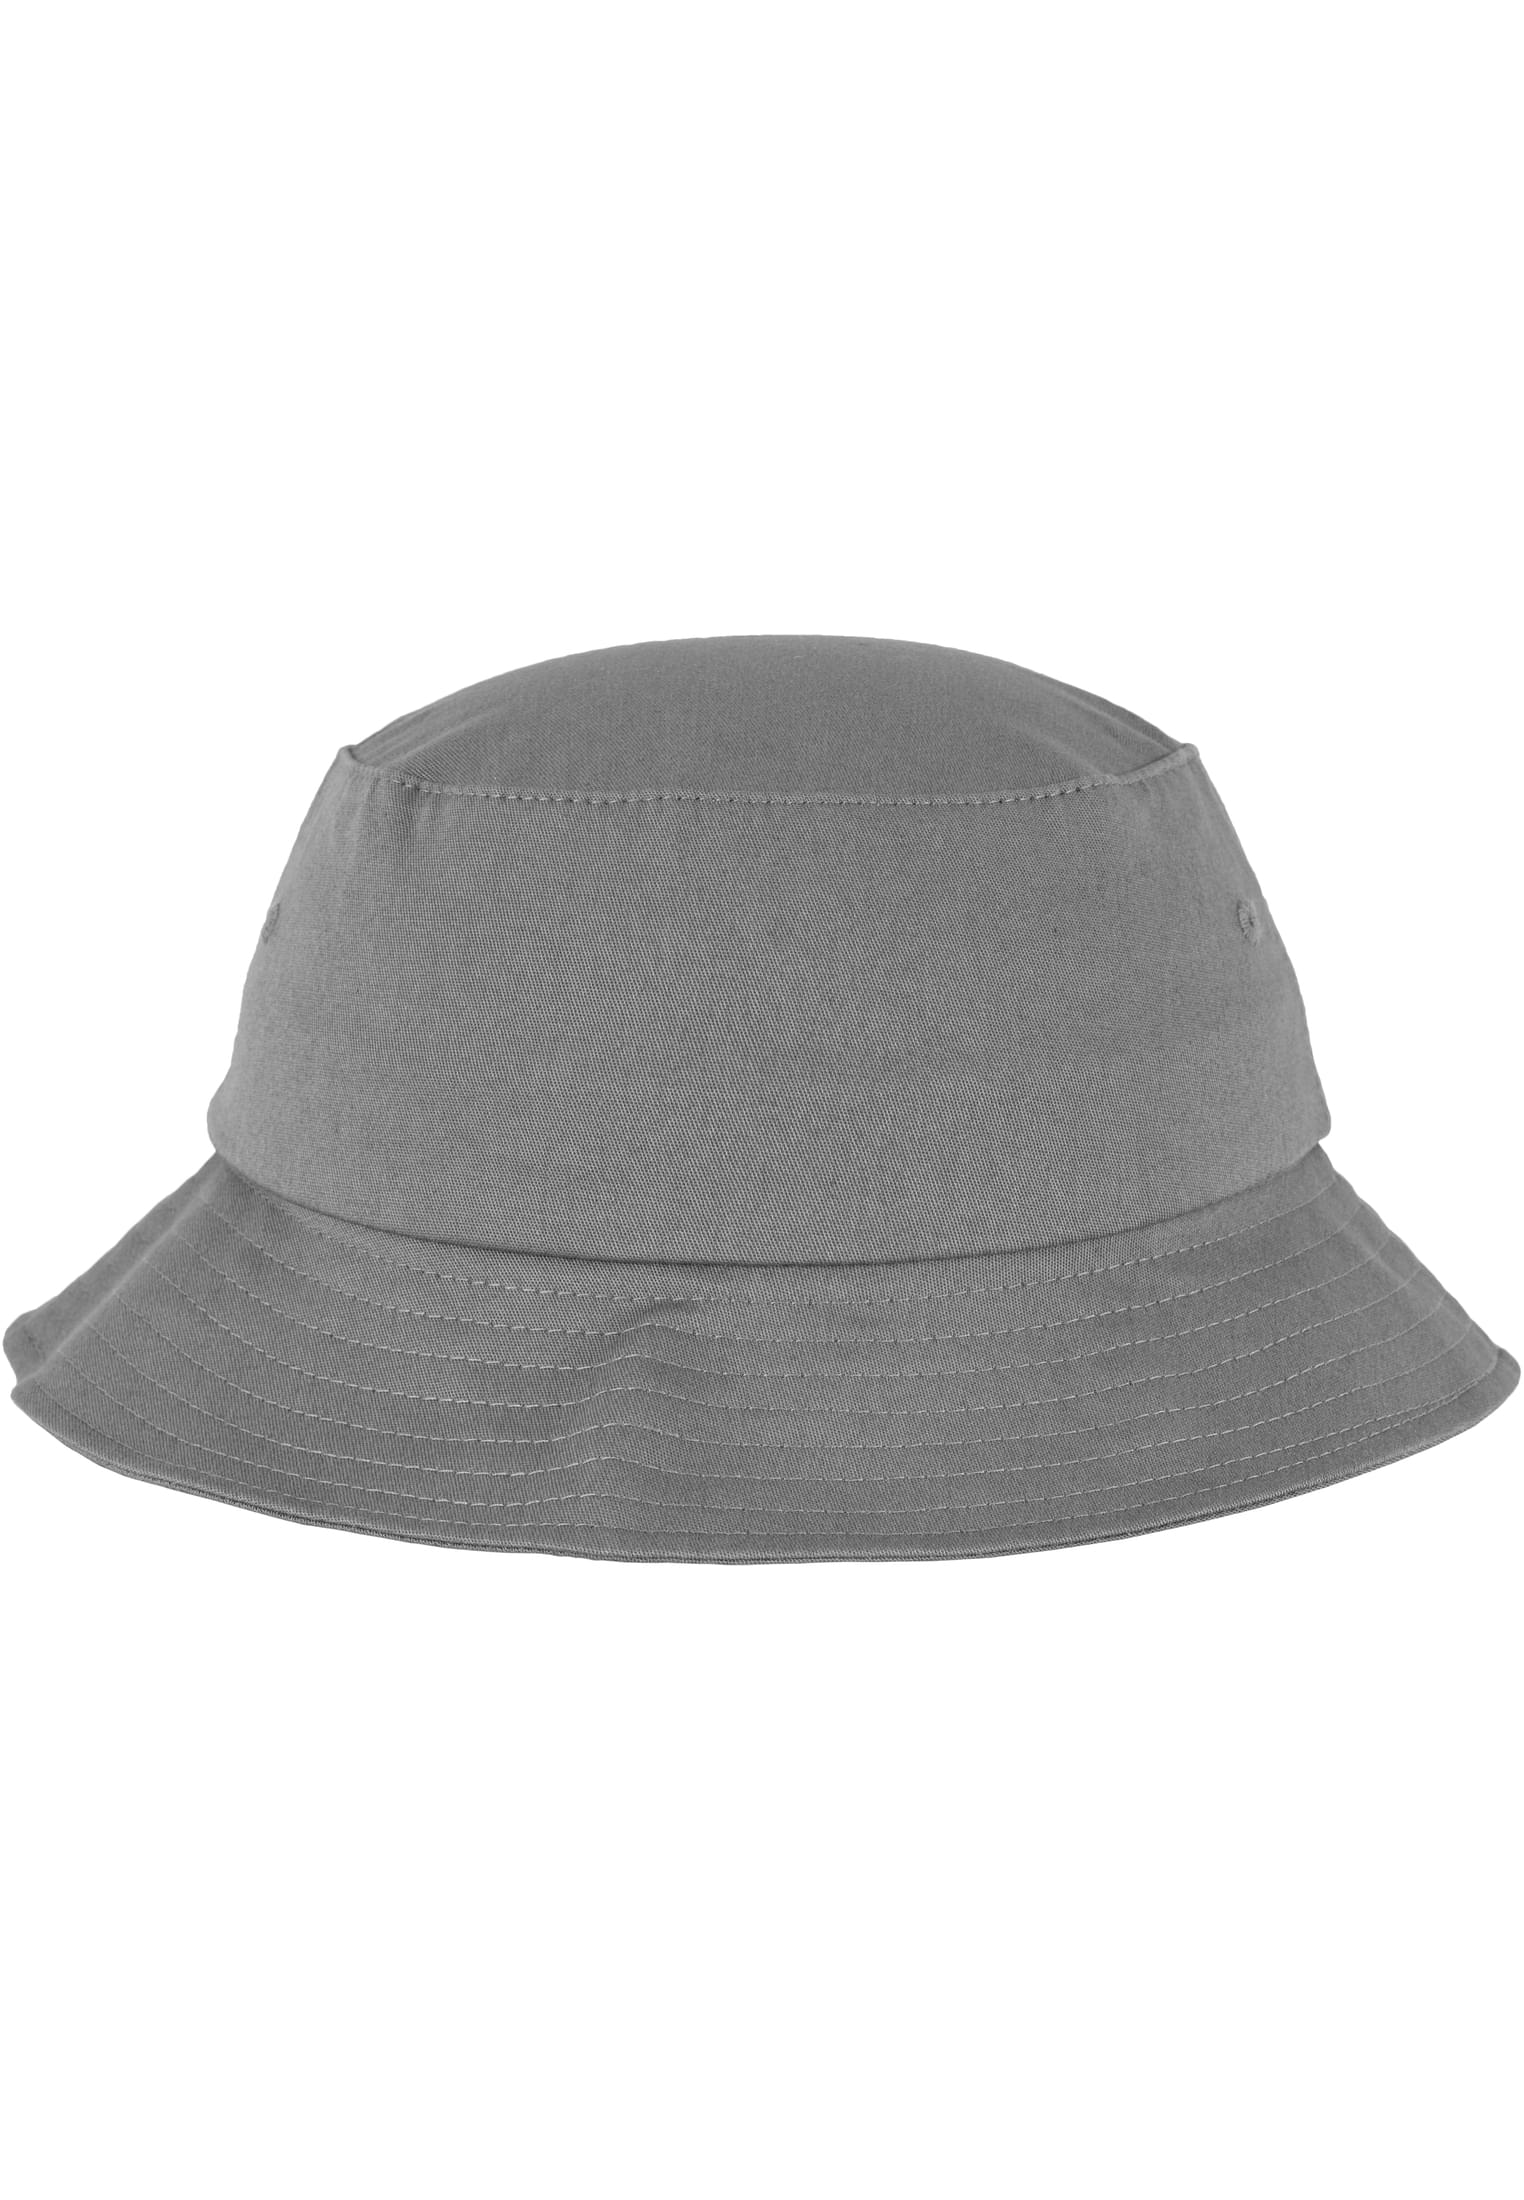 Bucket Twill Cotton Flexfit Hat-5003